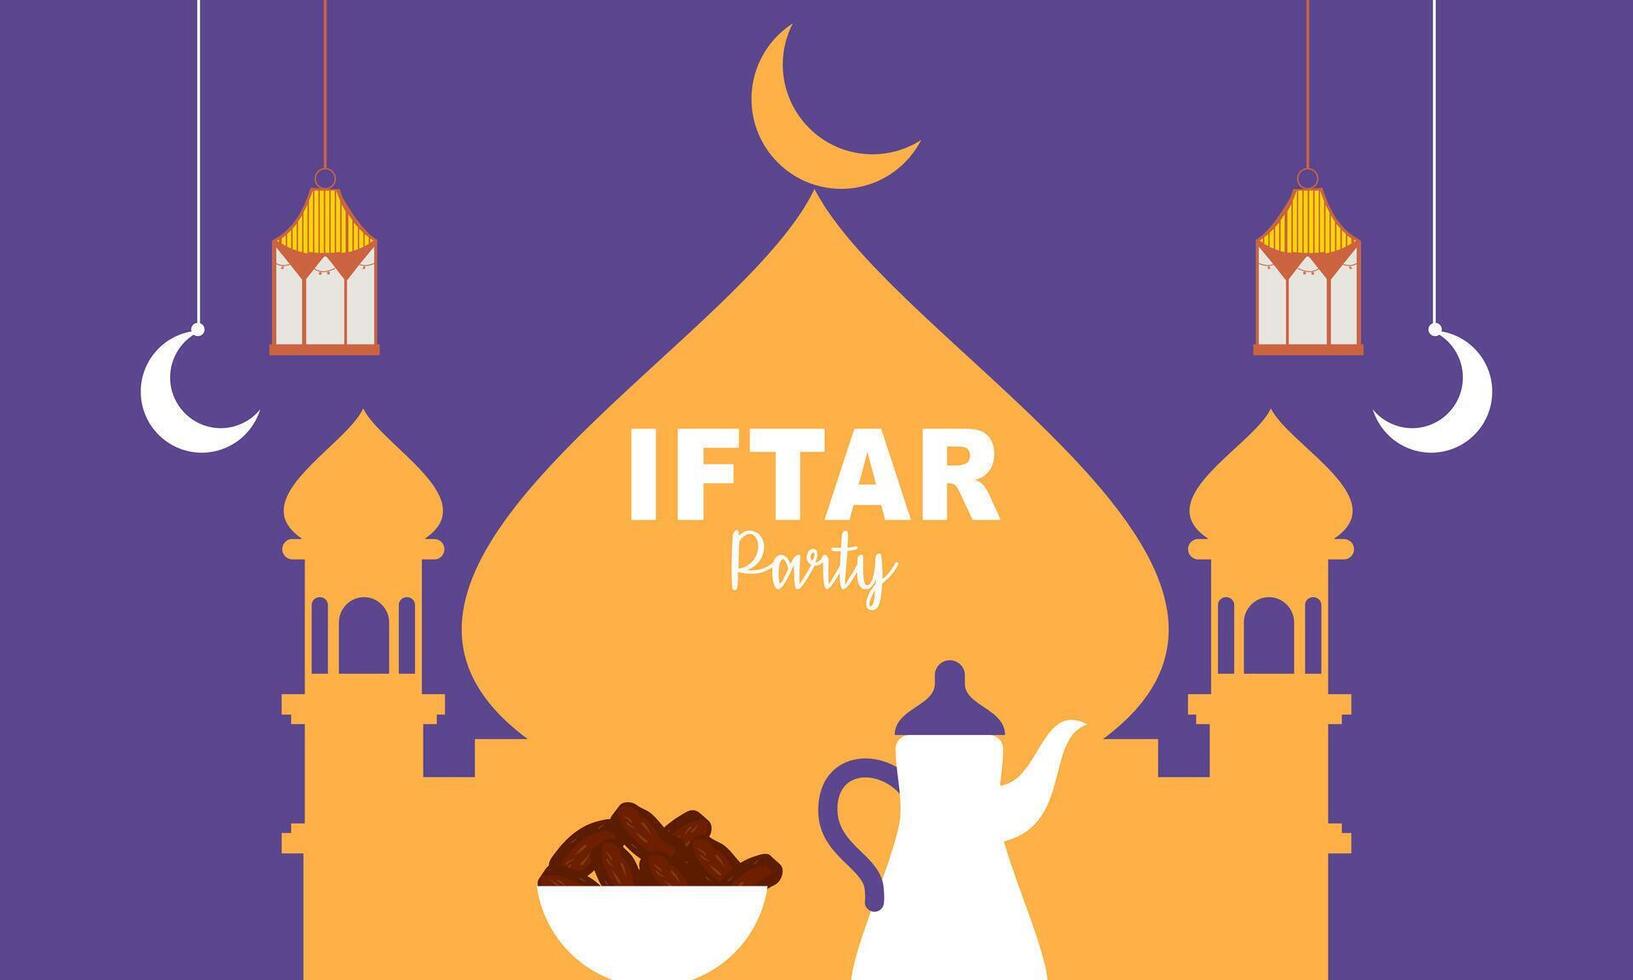 iftar fête fête concept prospectus vecteur illustration